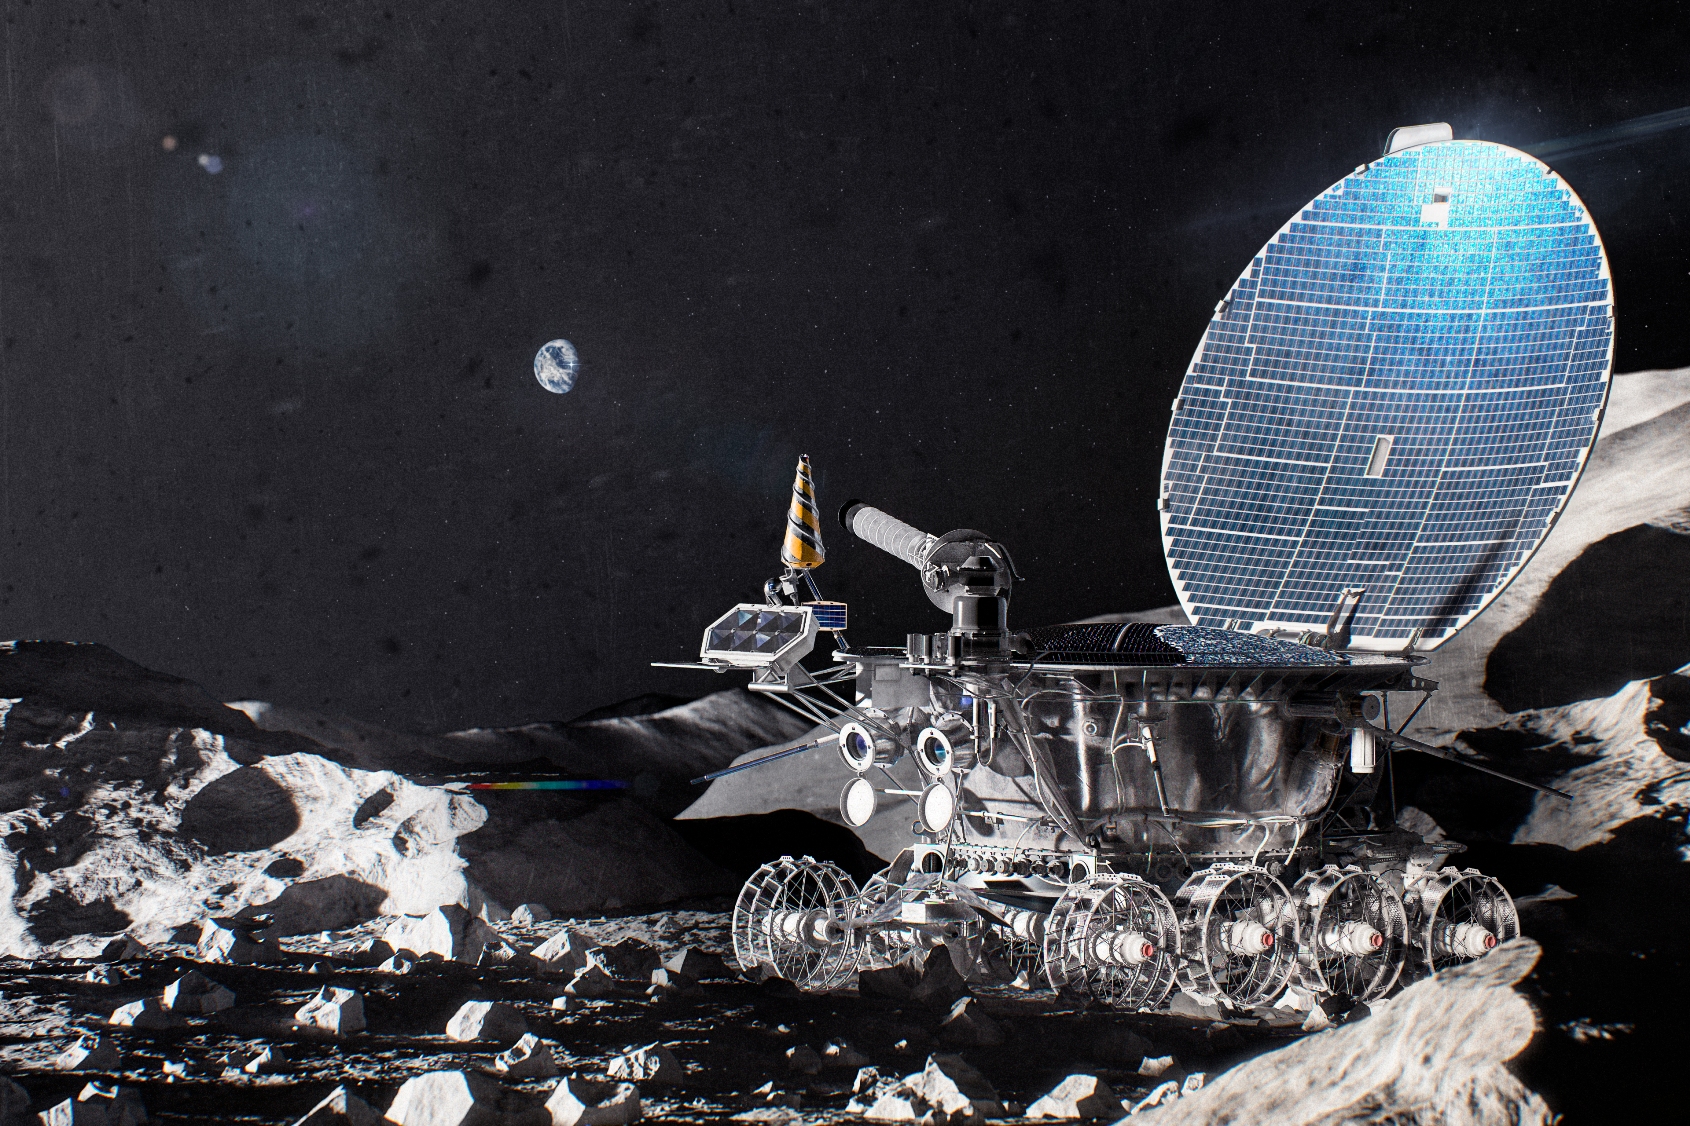 Une vue d'artiste de Lunokhod 1, un robot soviétique qui roula sur la Lune pendant 11 mois. Il se composait de deux parties principales : un boîtier scellé avec des équipements scientifiques et de service et un châssis. Il avait la forme d'une « casserole »&nbsp;d'un diamètre d'environ 2 mètres, recouverte d'une sorte couvercle portant des cellules solaire. © Alexey Ryabov, CC by-sa 4.0, Wikipedia